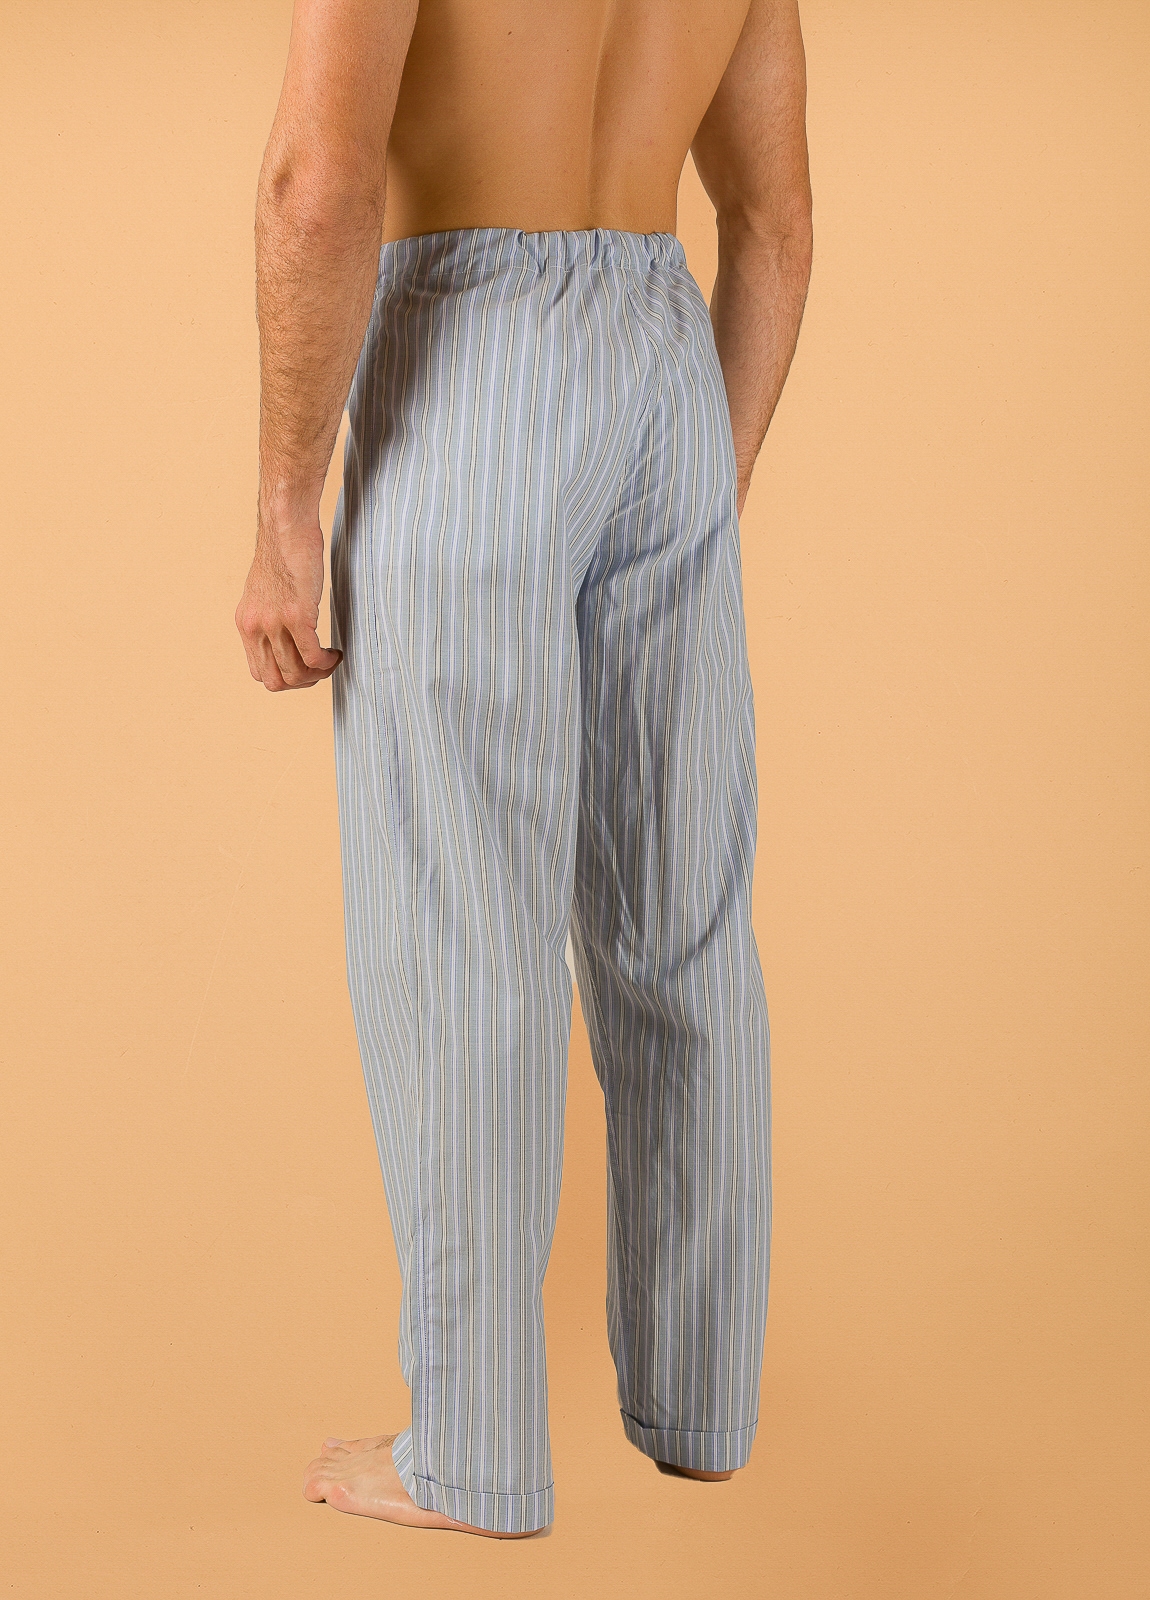 Pantalón largo de Pijama FUREST COLECCIÓN rayas azul y verde con funda incluida - Ítem1